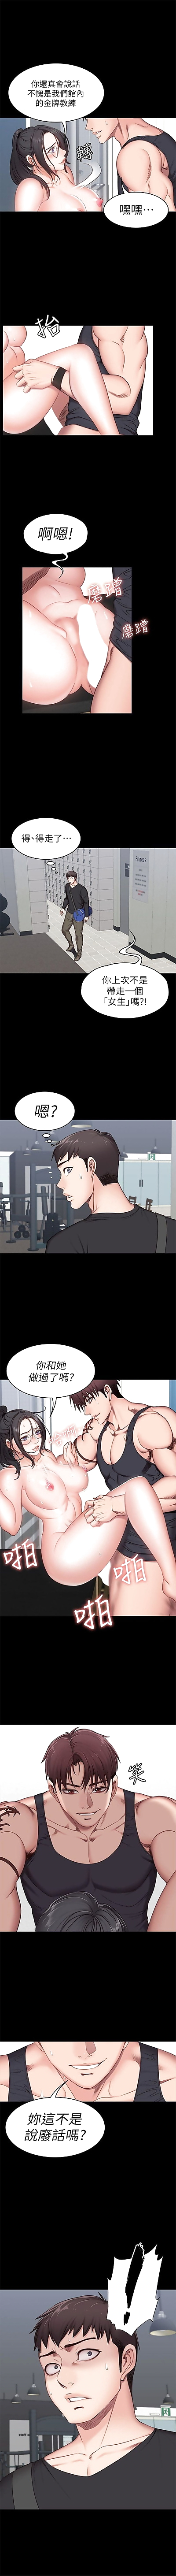 健身教练1-10 中文翻译 （更新中）